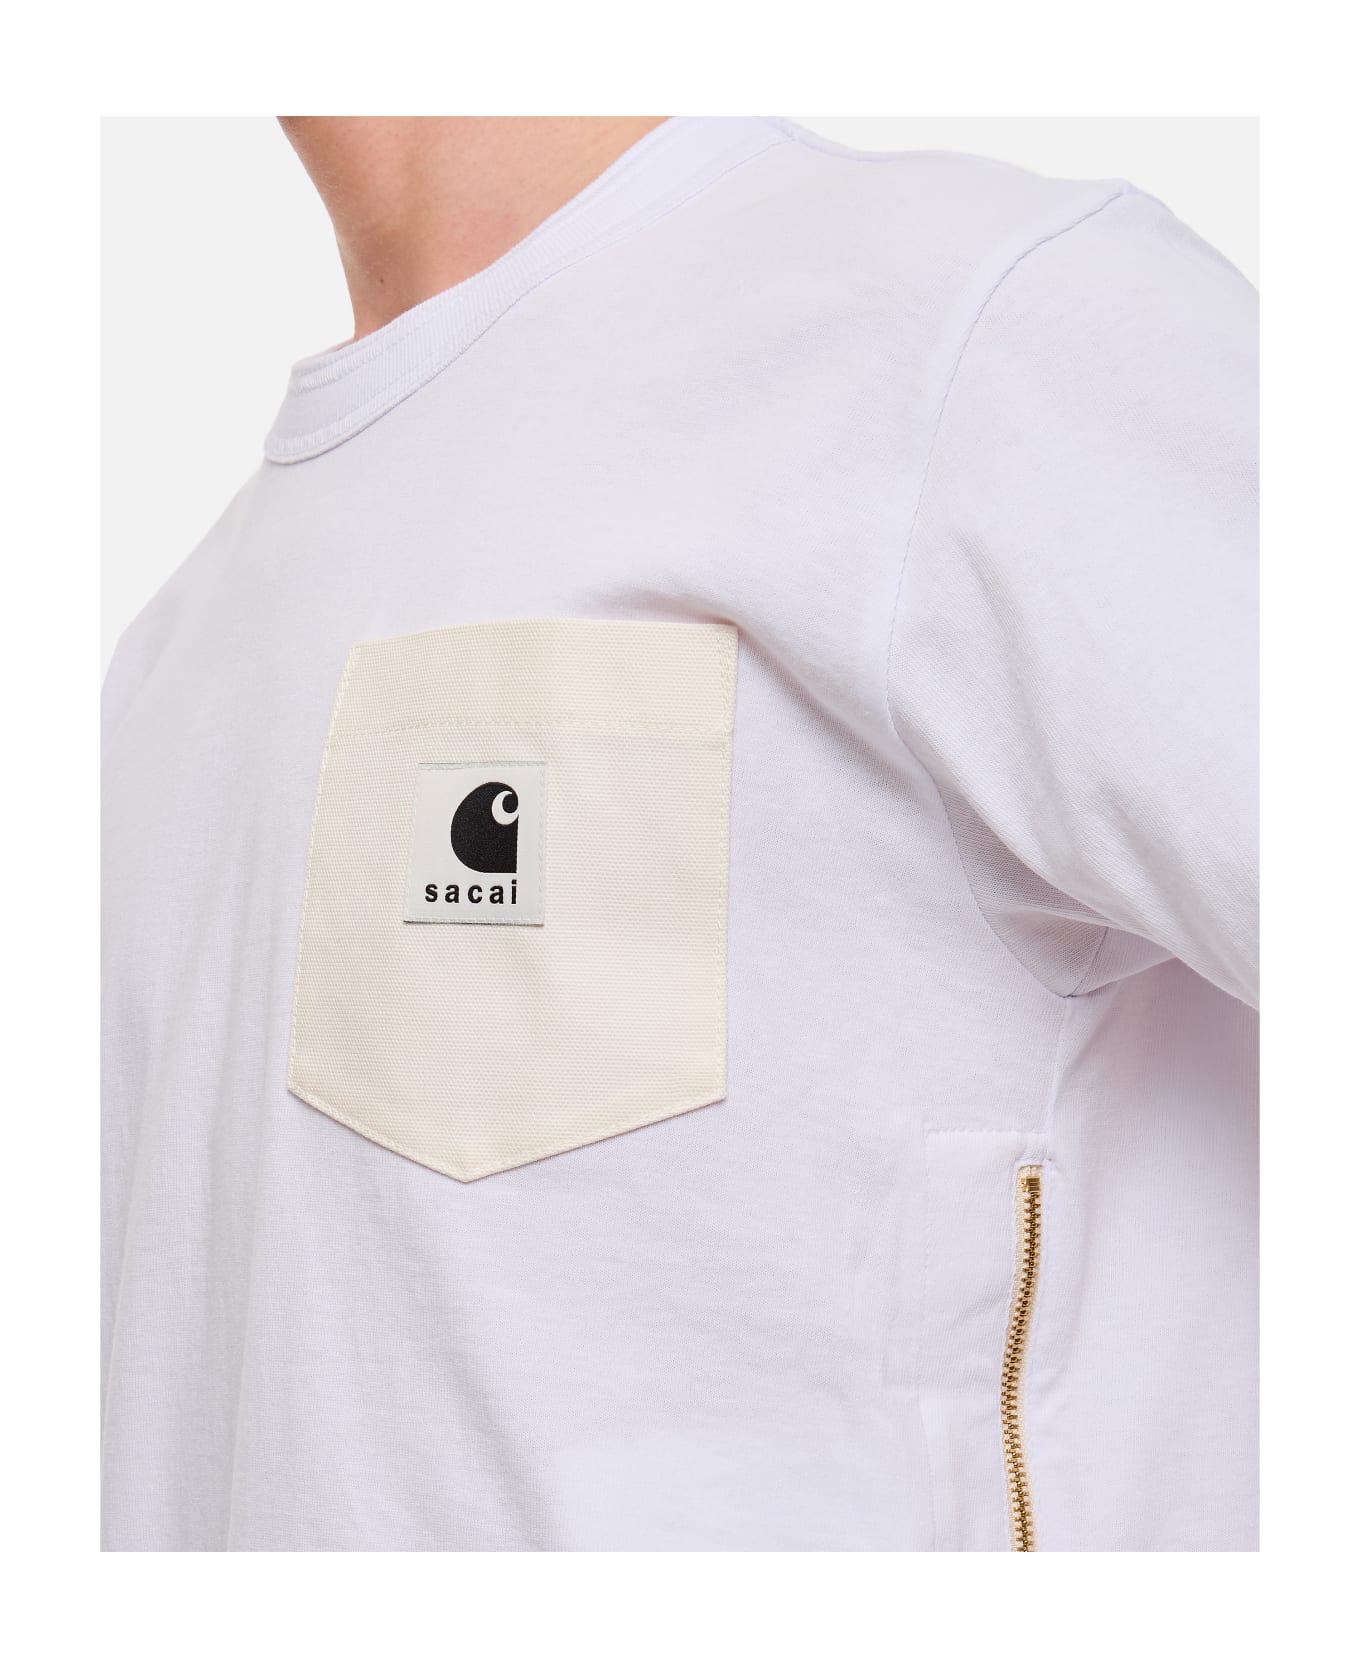 Sacai X Carhartt Wip Cotton T-shirt - White